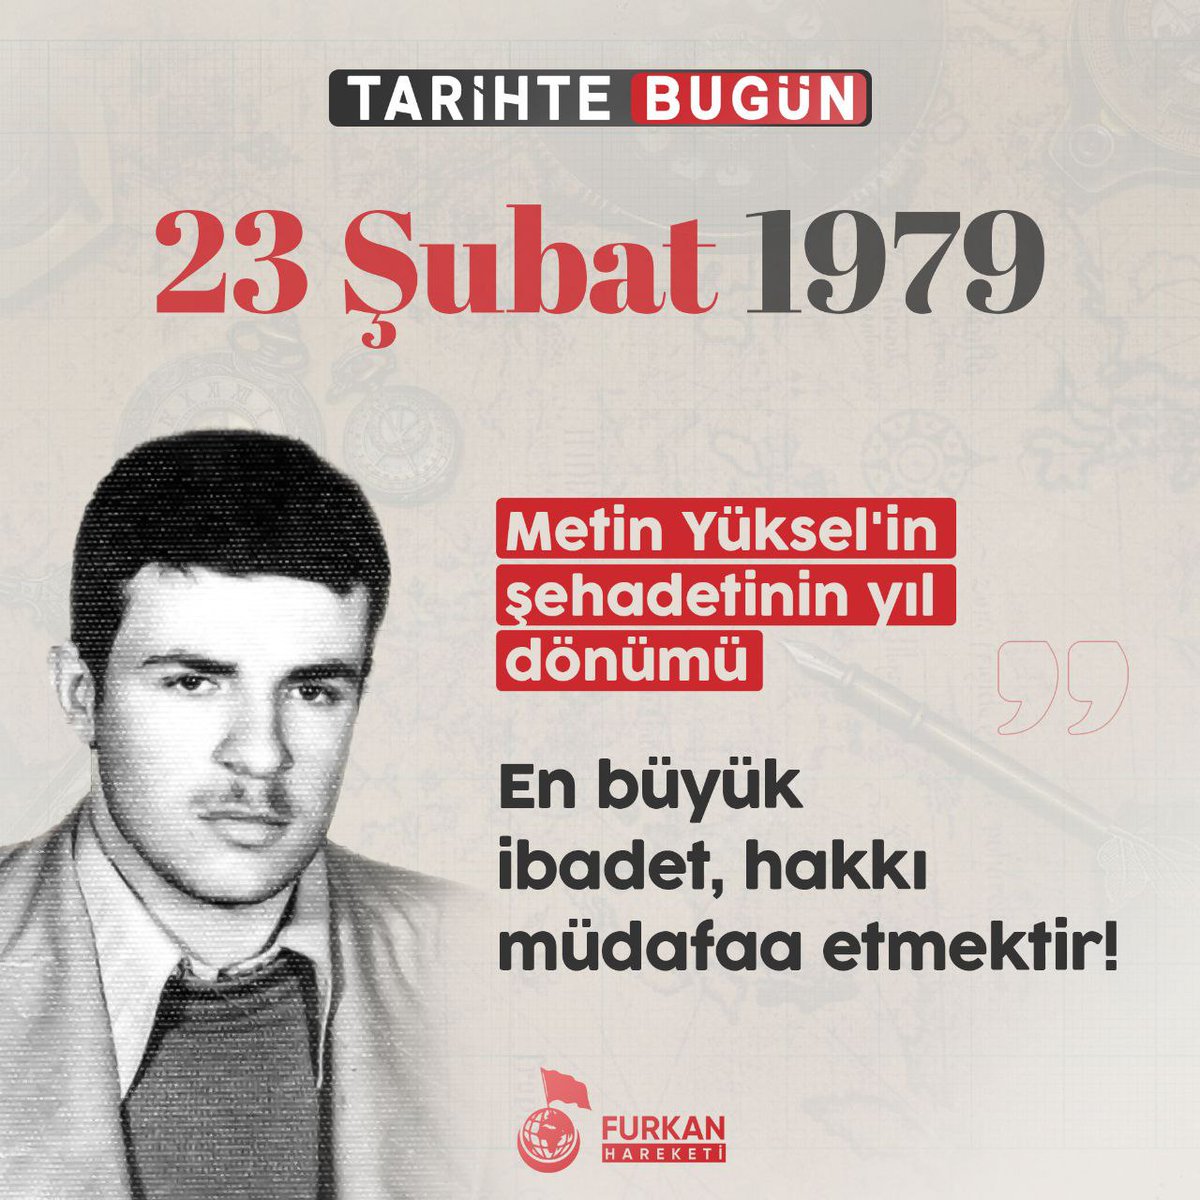 TARİHTE BUGÜN 

23 Şubat 1979 Metin Yüksel'in şehadetinin yıl dönümü

En büyük ibadet, hakkı müdafaa etmektir!

#MetinYüksel
#şehadetayı